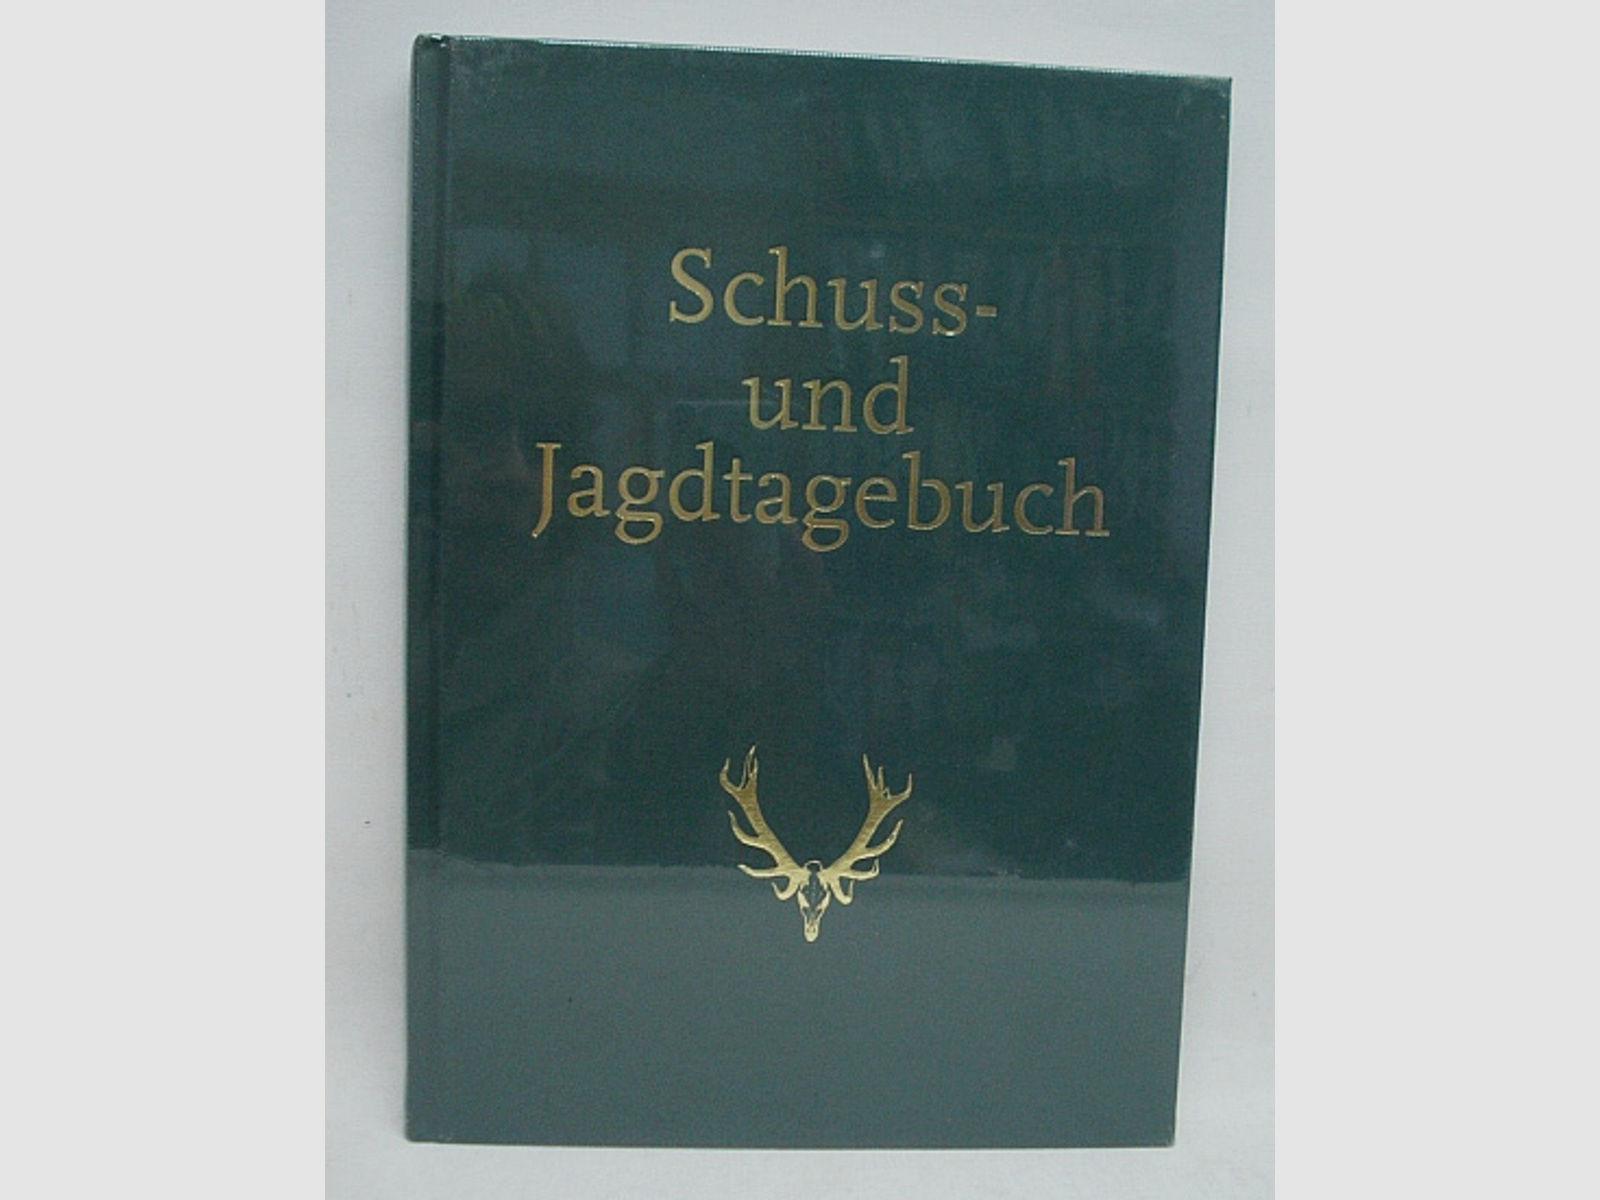 Schuss- und Jagdtagebuch A4 - grünen Leinen, 128 Seiten